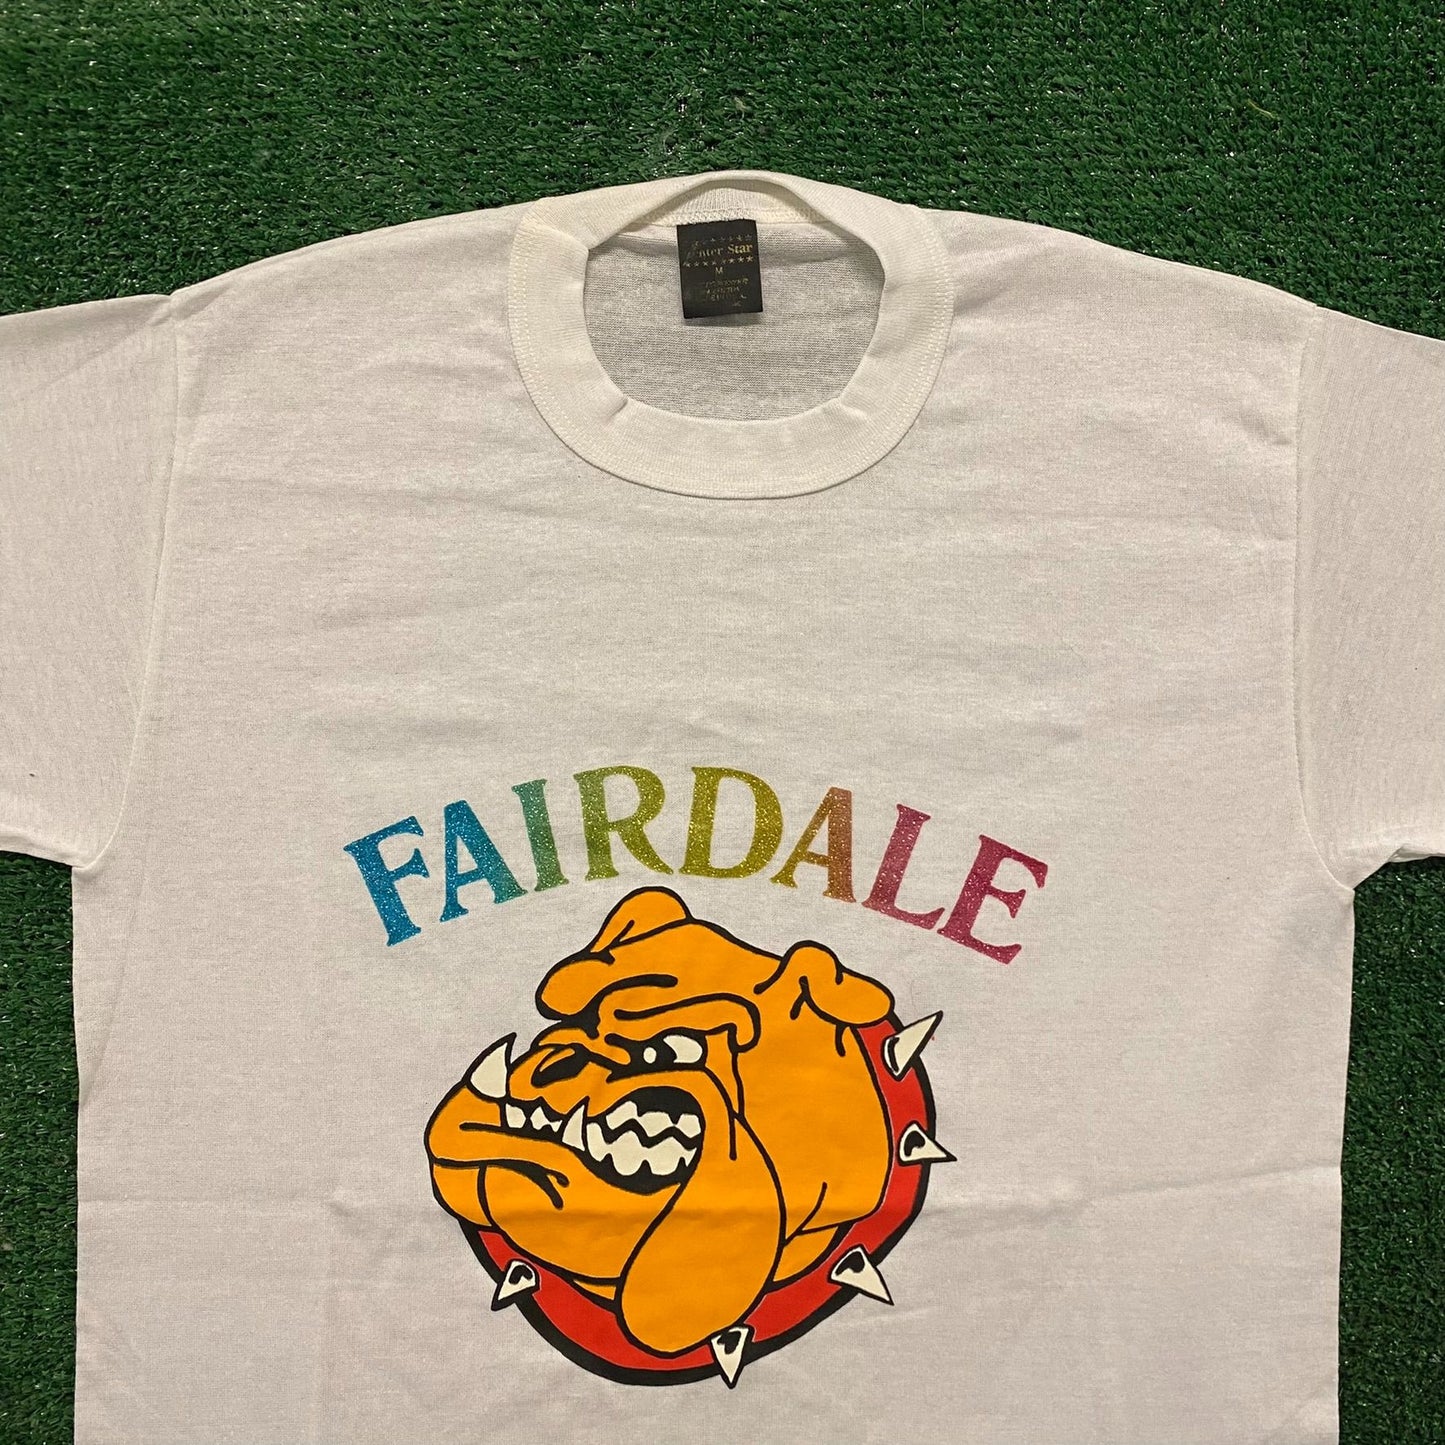 Fairdale Bulldogs Vintage 80s Glitter Iron On T-Shirt